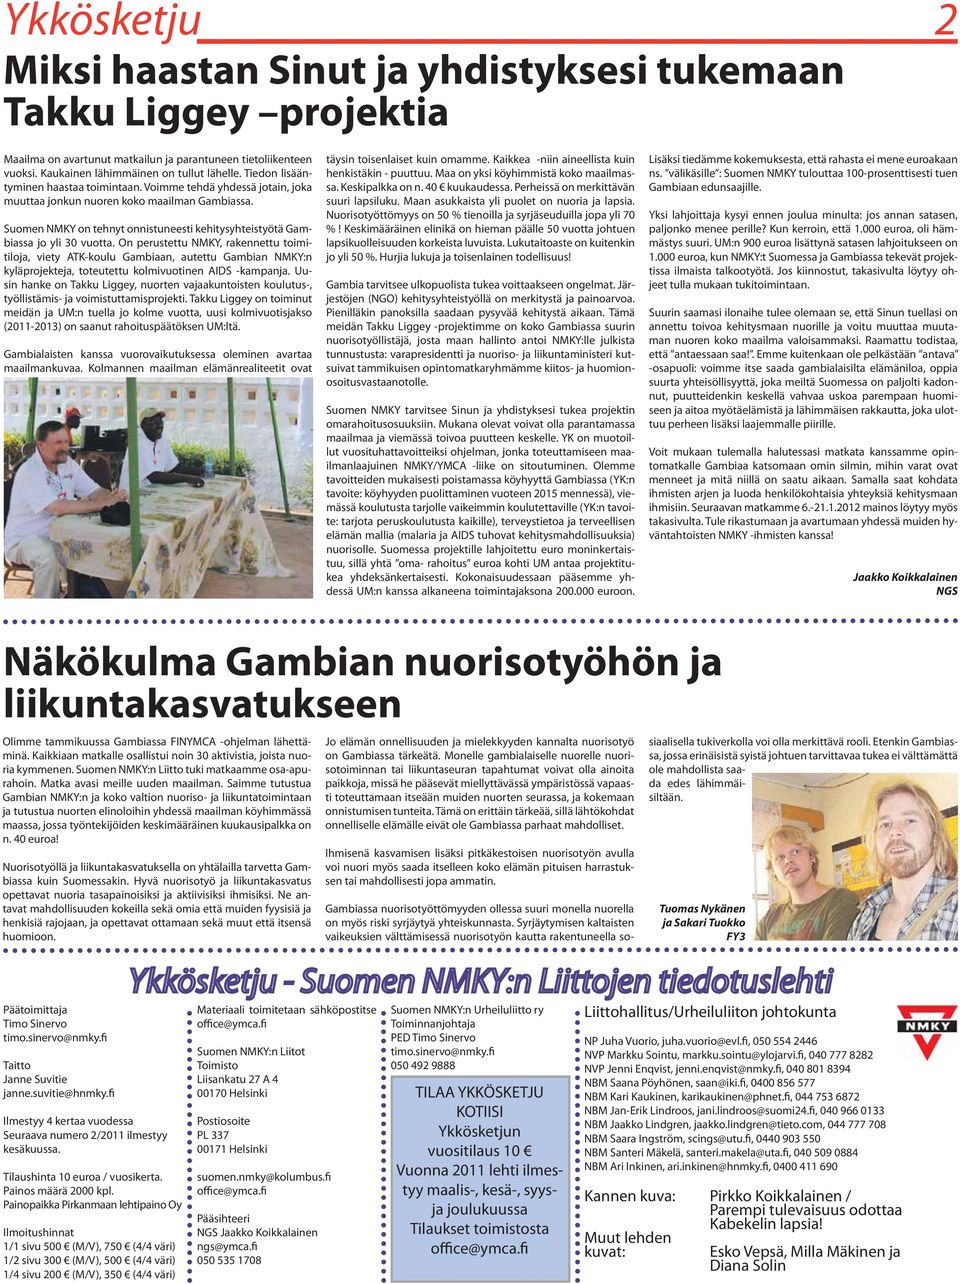 Suomen NMKY on tehnyt onnistuneesti kehitysyhteistyötä Gambiassa jo yli 30 vuotta.